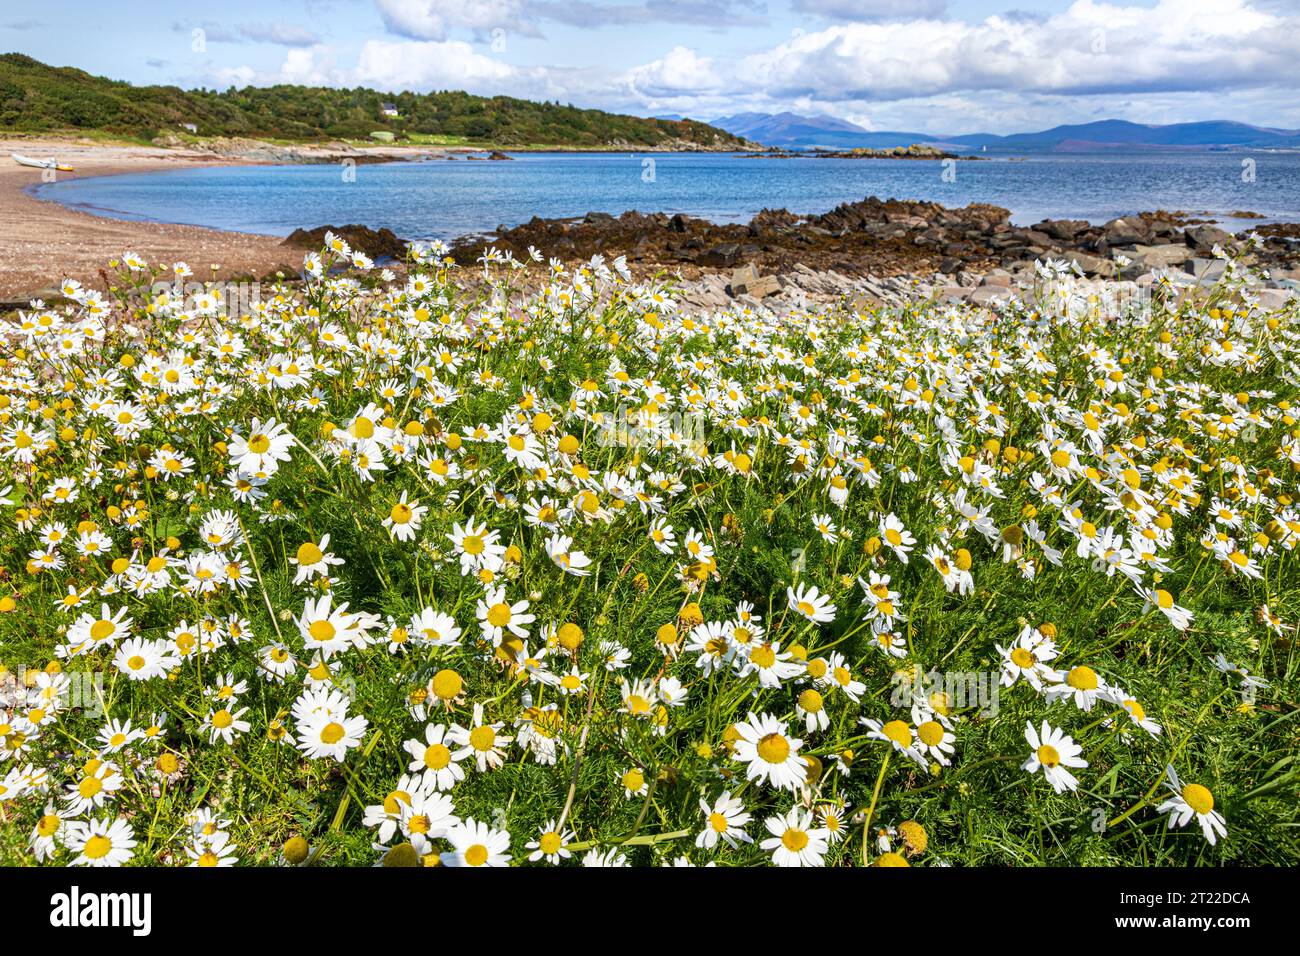 Mayweed de mer (Tripleurospermum maritimum) poussant près d'une plage sur la péninsule de Kintyre, Écosse Royaume-Uni Banque D'Images